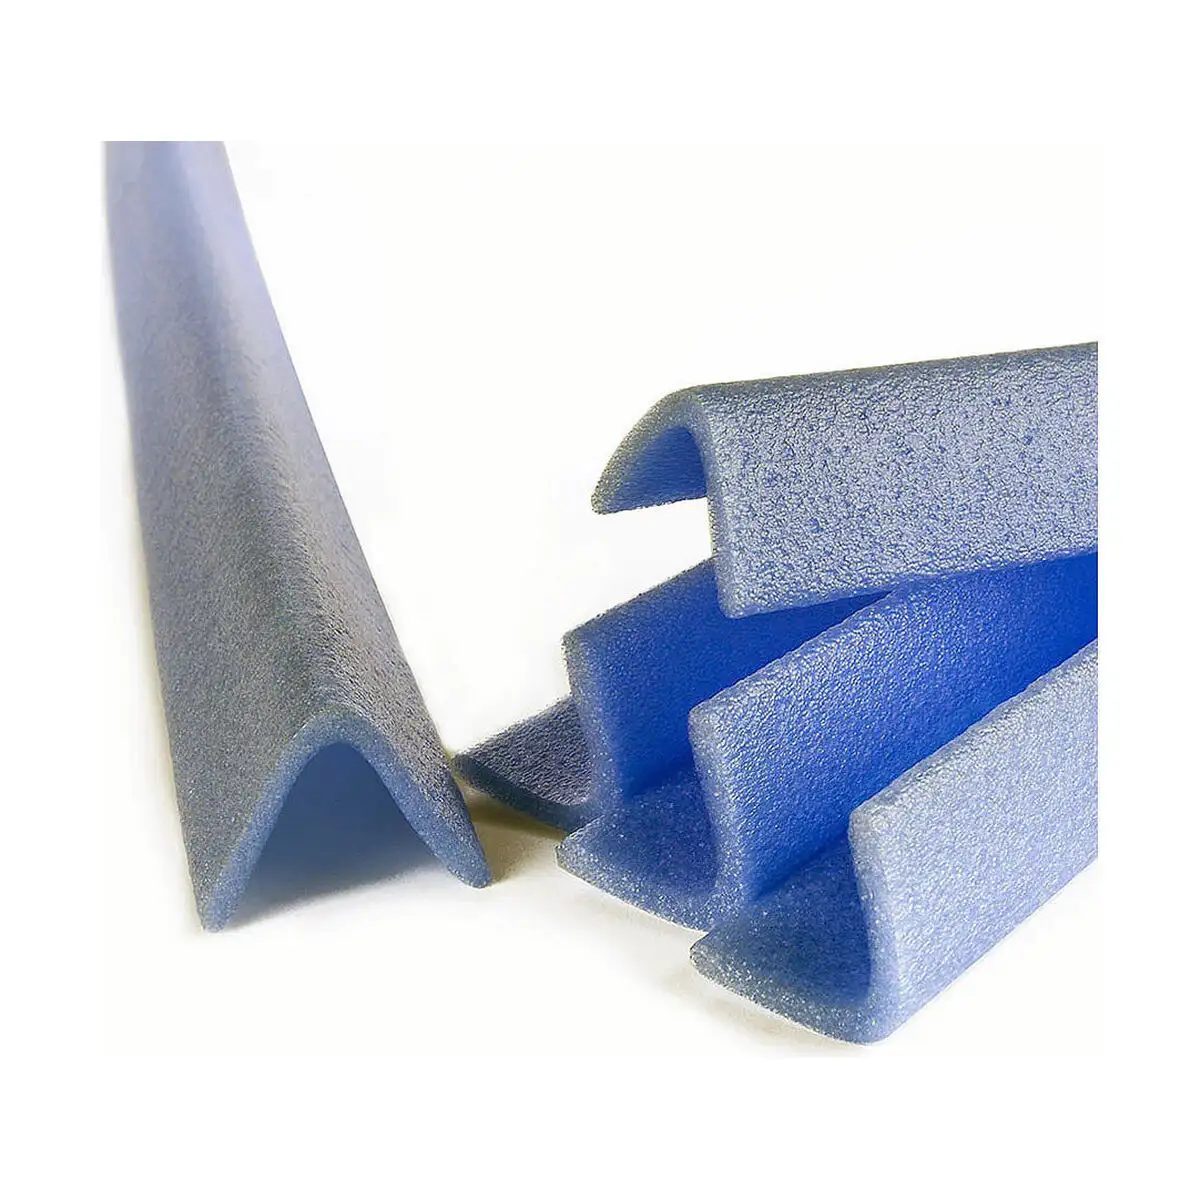 Corniere pour emballage fun go i50 bleu polyethylene 1 m 2 unites _4425. Bienvenue chez DIAYTAR SENEGAL - Où Chaque Détail Fait la Différence. Découvrez notre sélection méticuleuse et choisissez des articles qui répondent à vos exigences.